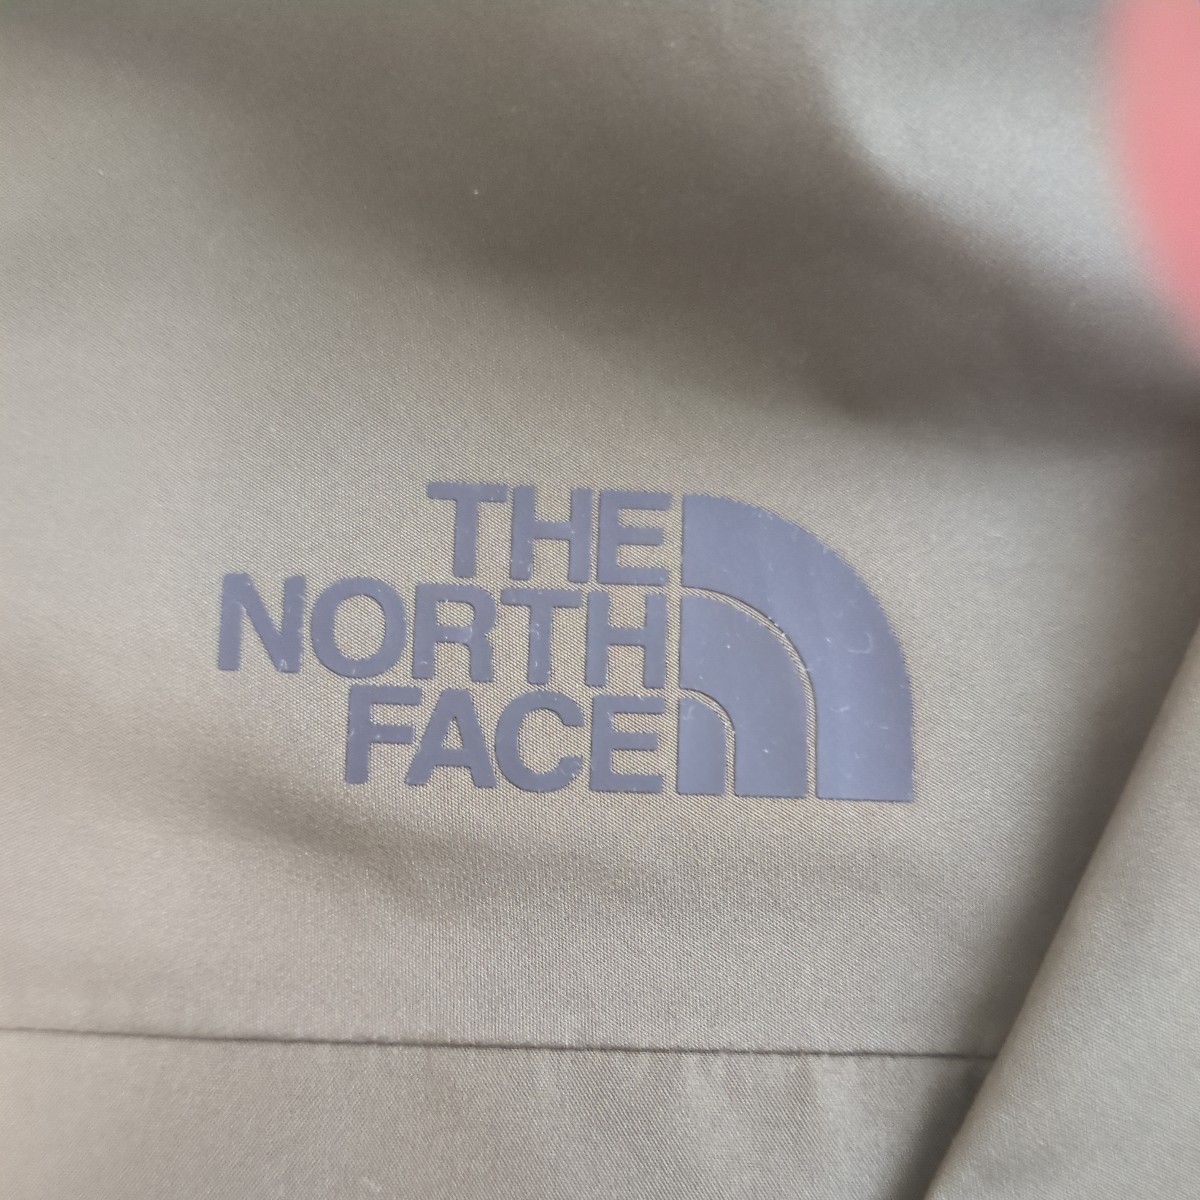 THE NORTH FACE クラウドジャケット NP12302(未使用、タグ付き)